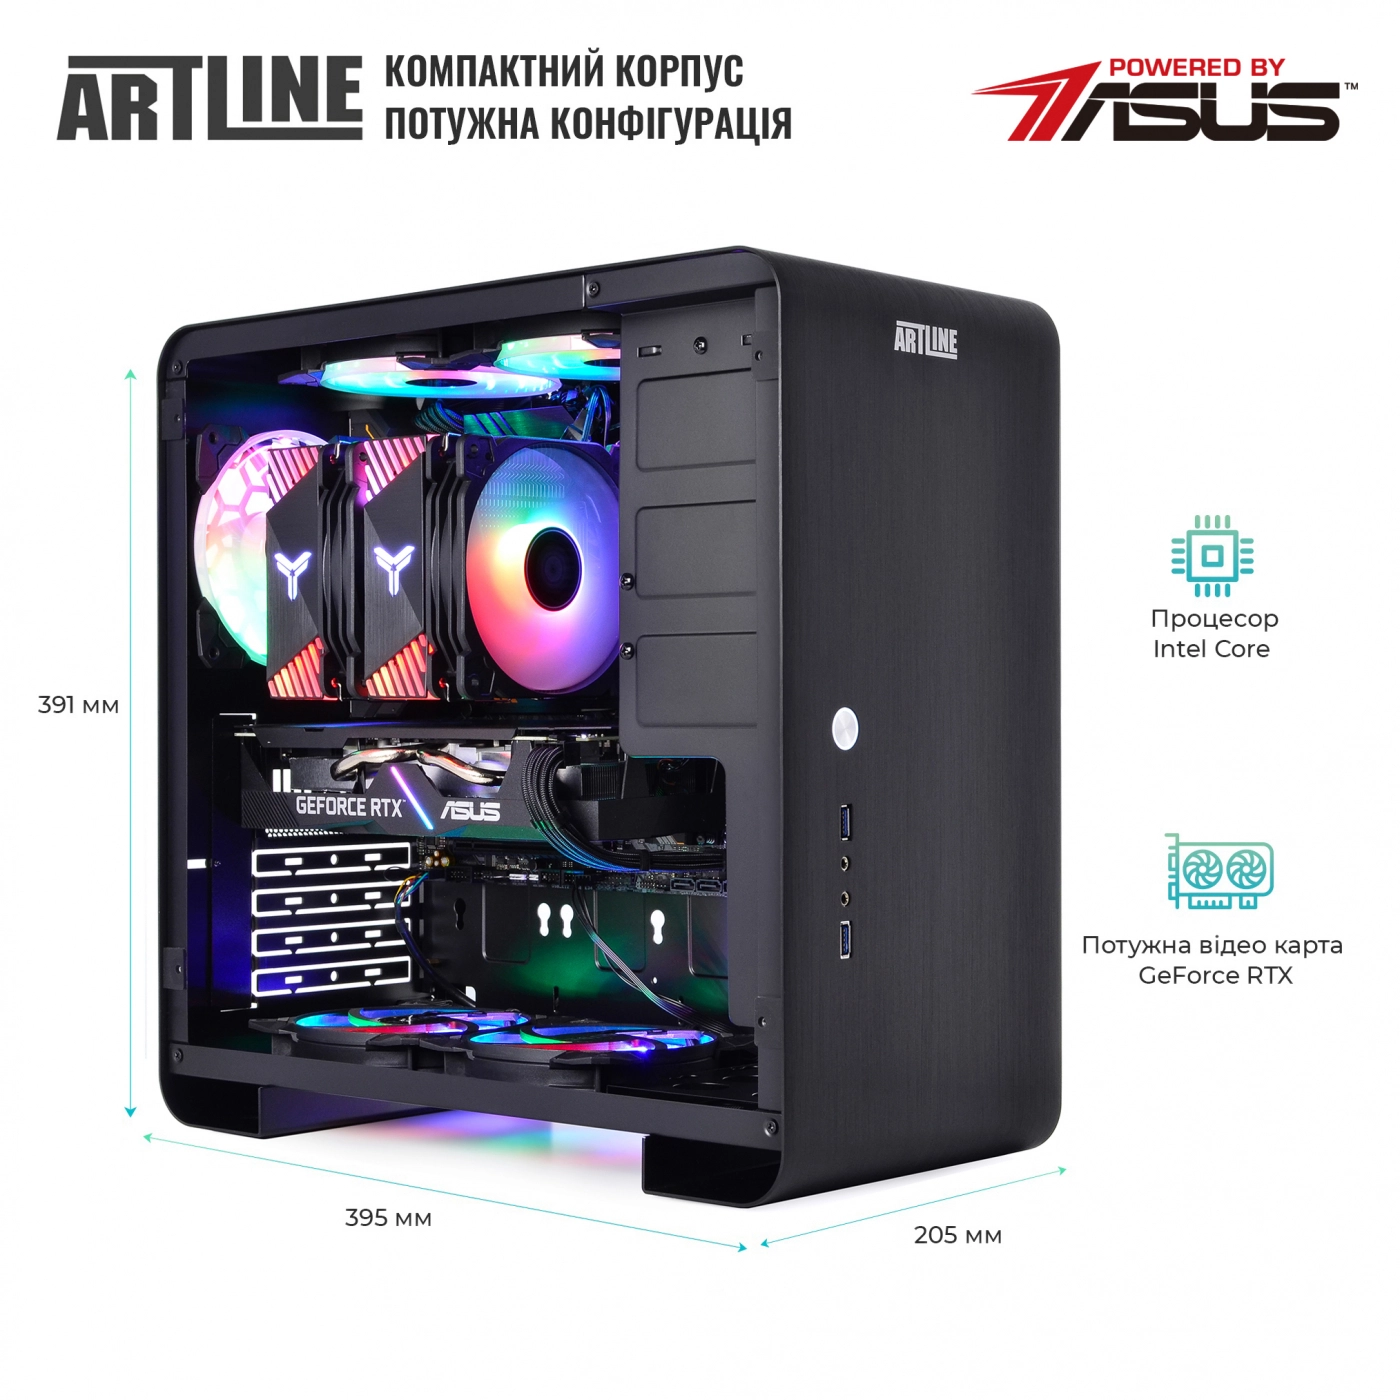 Купить Компьютер ARTLINE Gaming X75v35 - фото 4